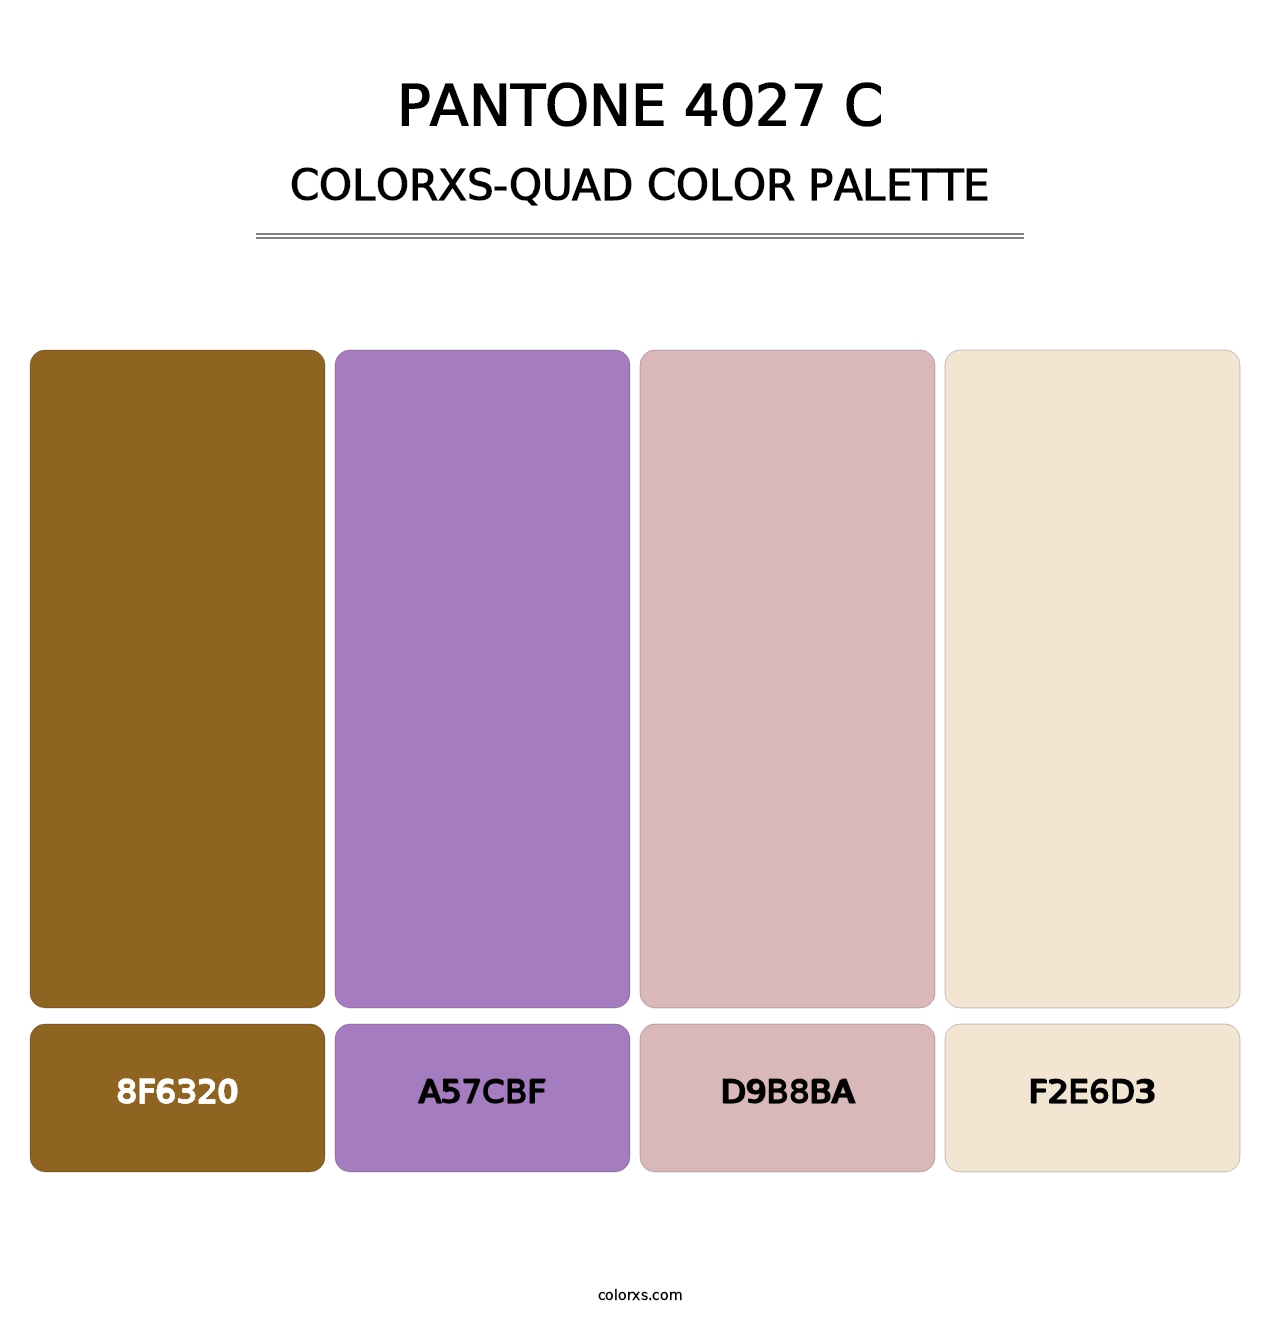 PANTONE 4027 C - Colorxs Quad Palette